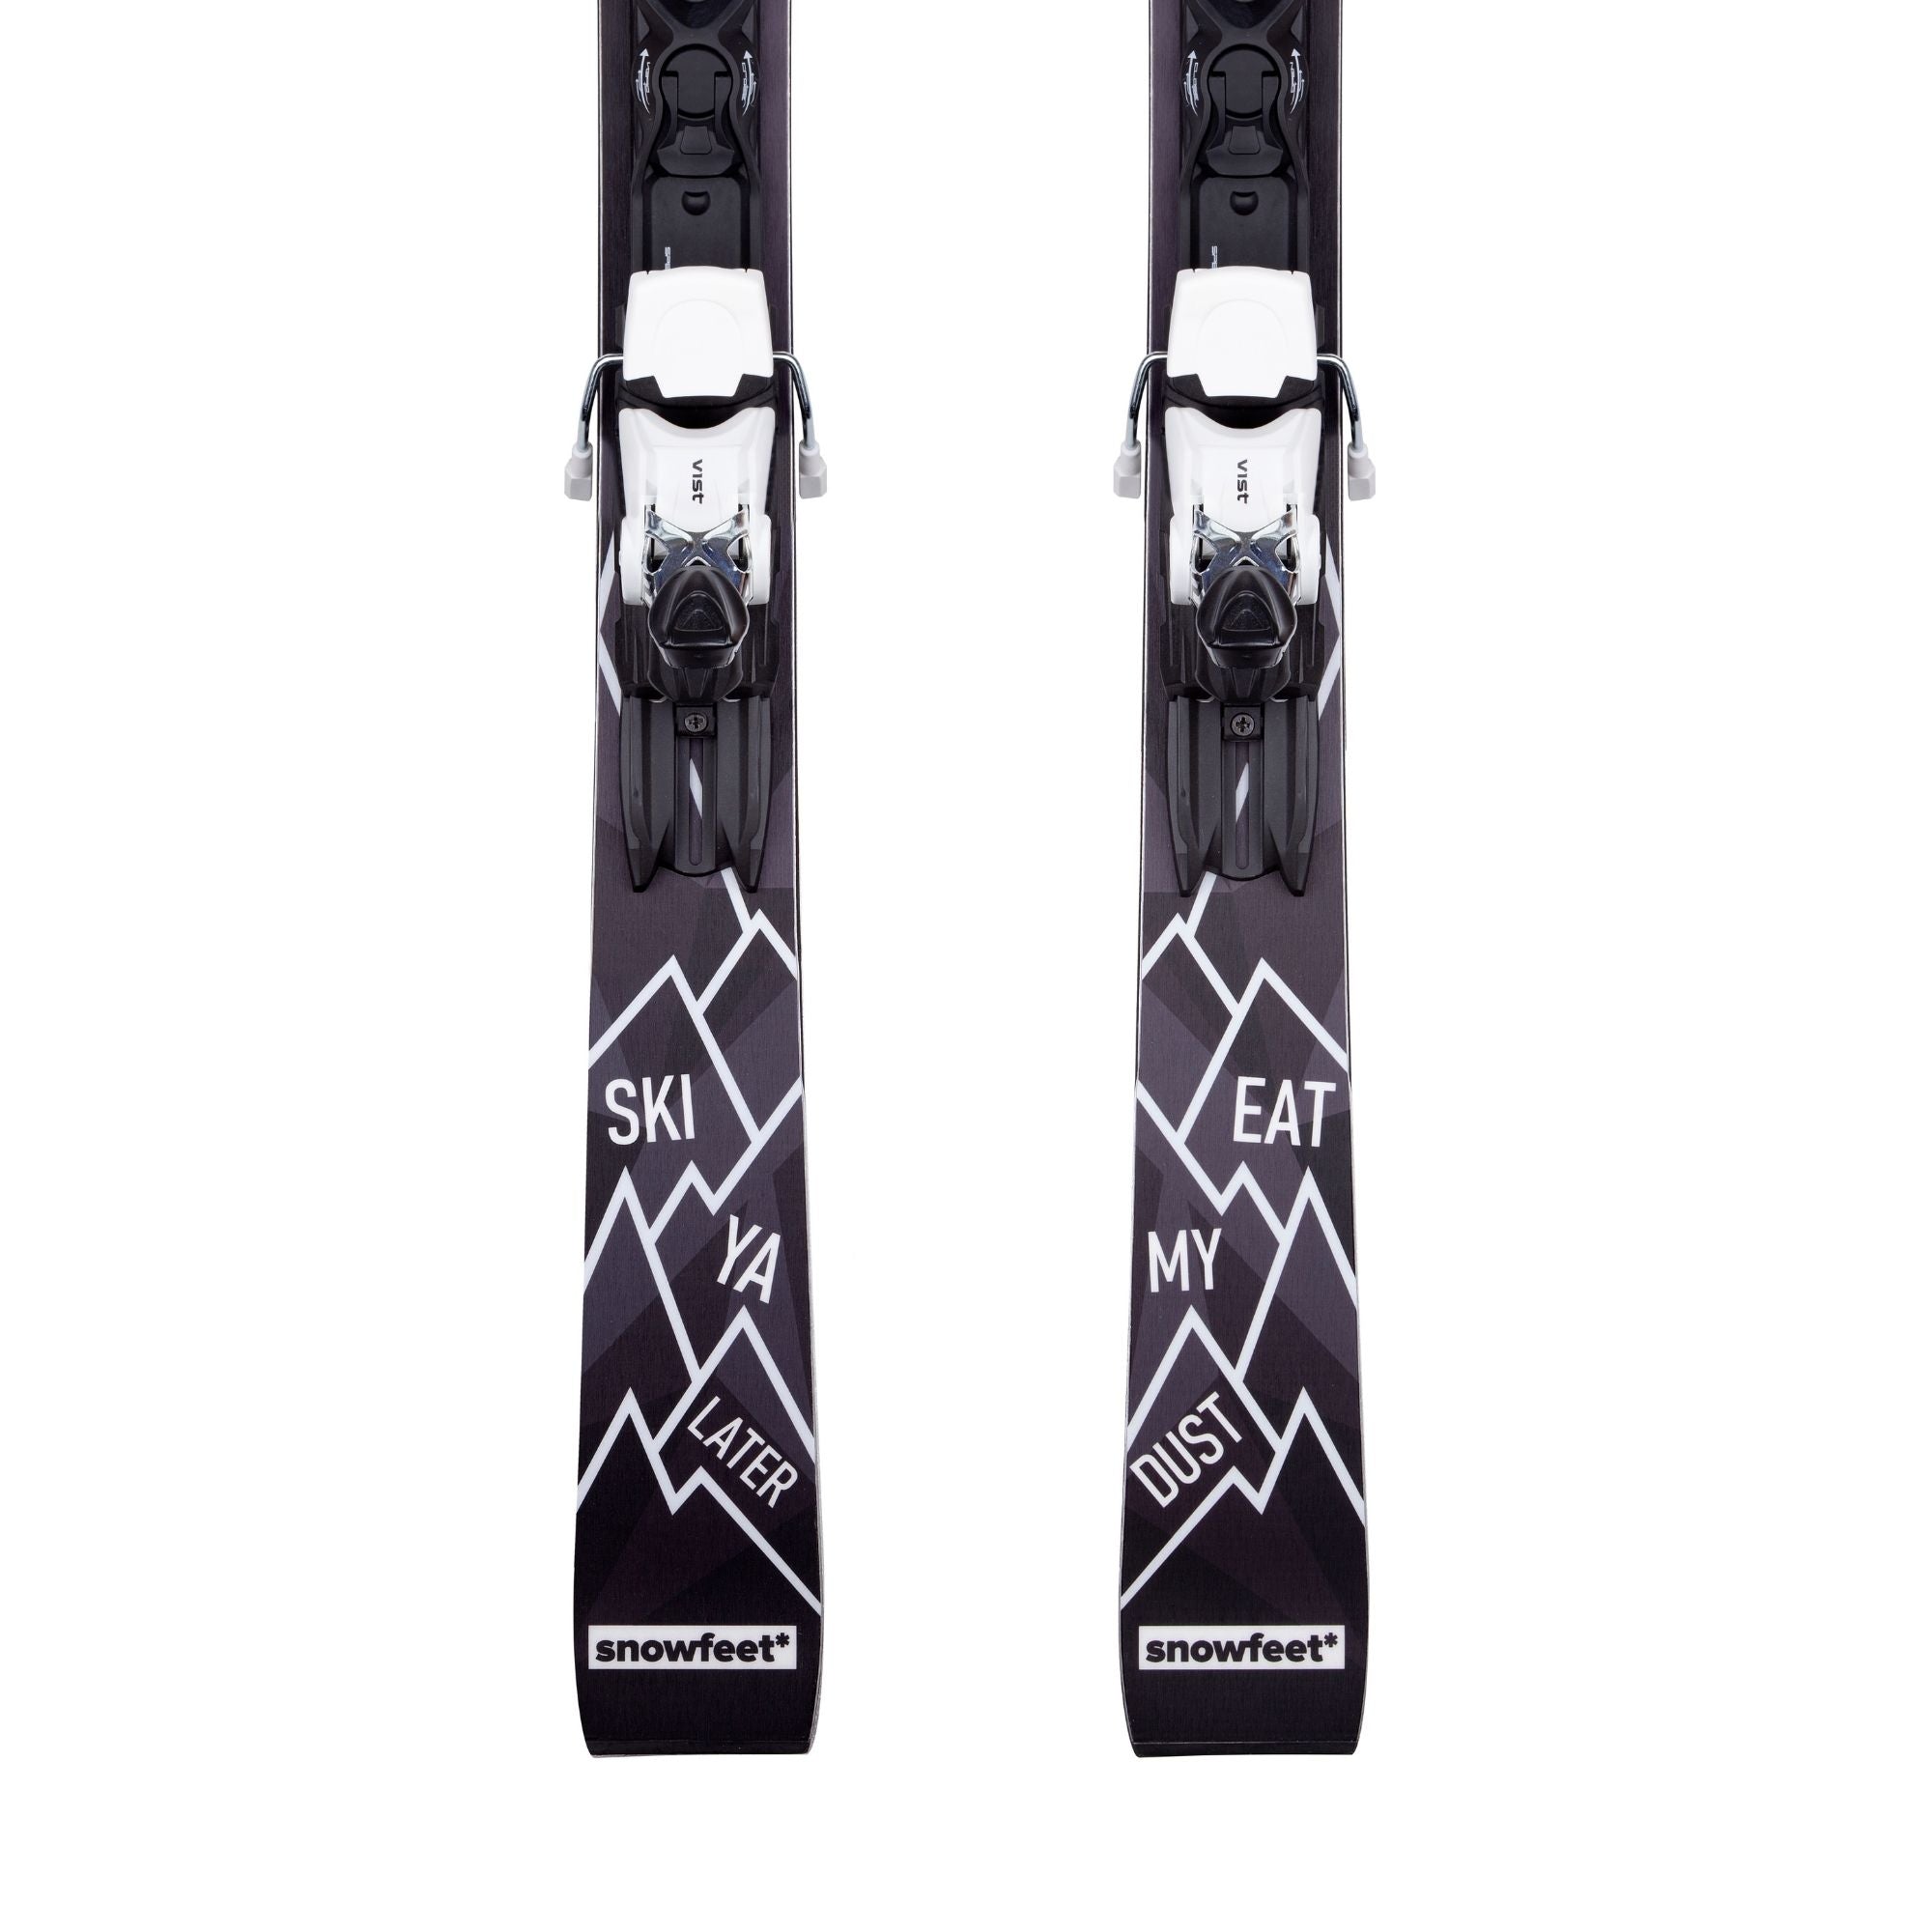 snowfeet ski 156 cm freedom ski limited edition all mountain ski